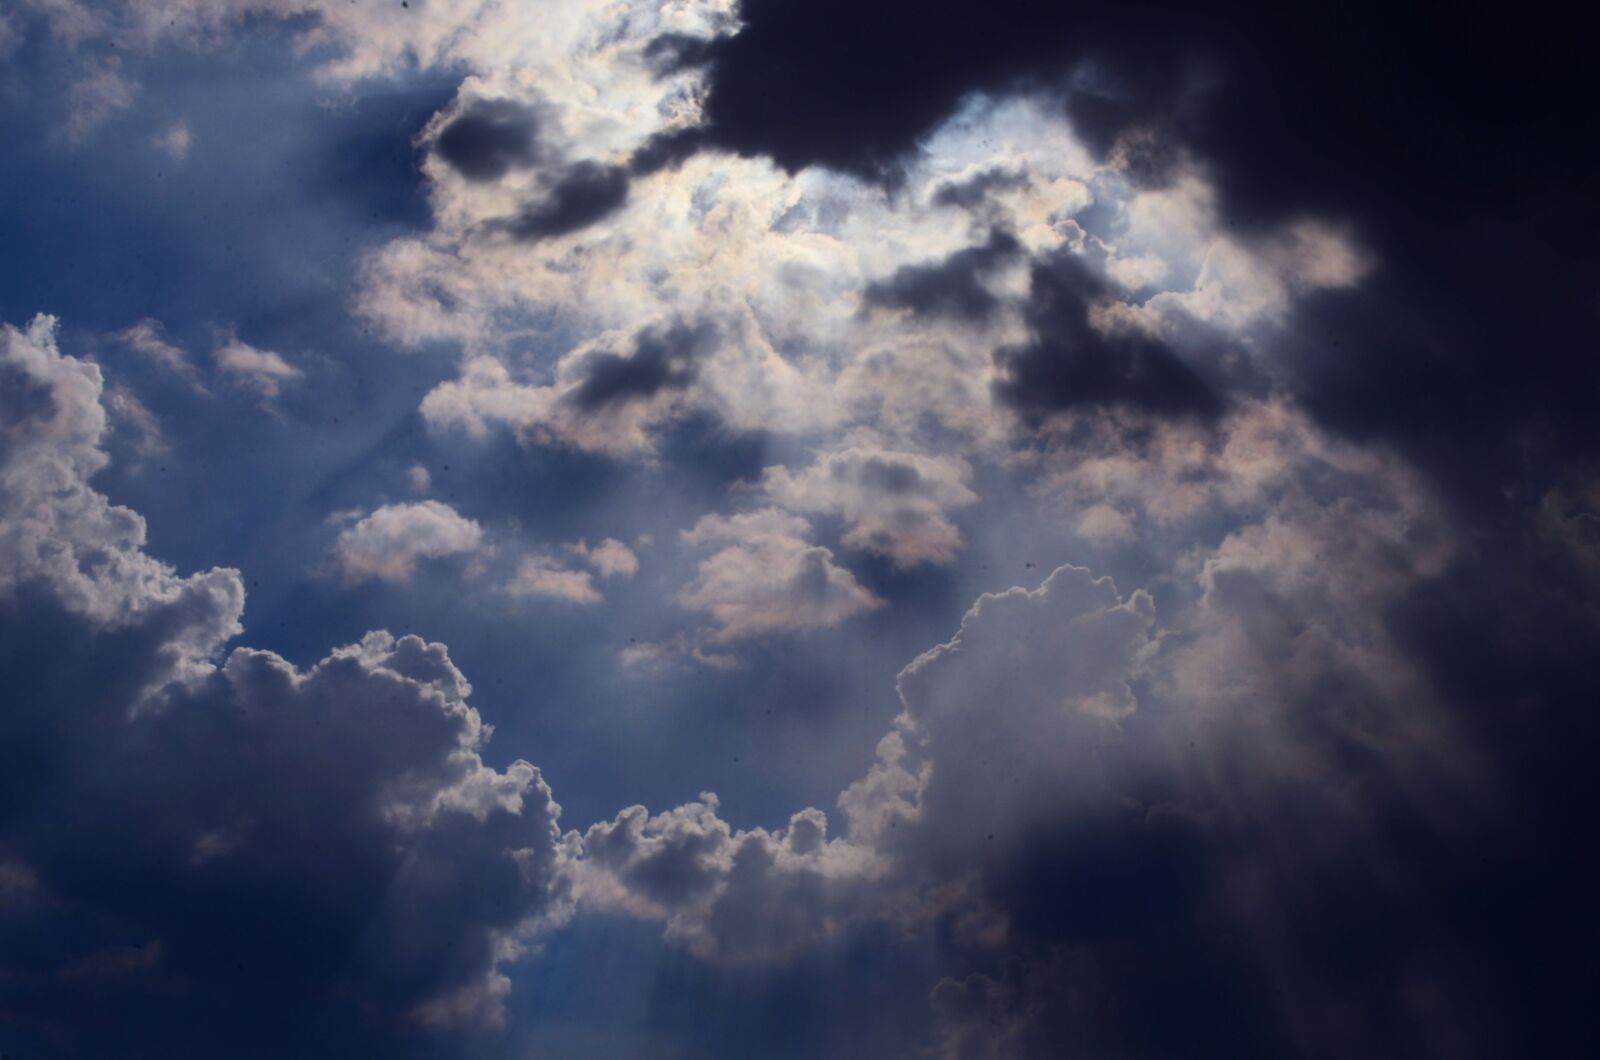 Nikon D5100 sample photo. Clouds, light, sky photography